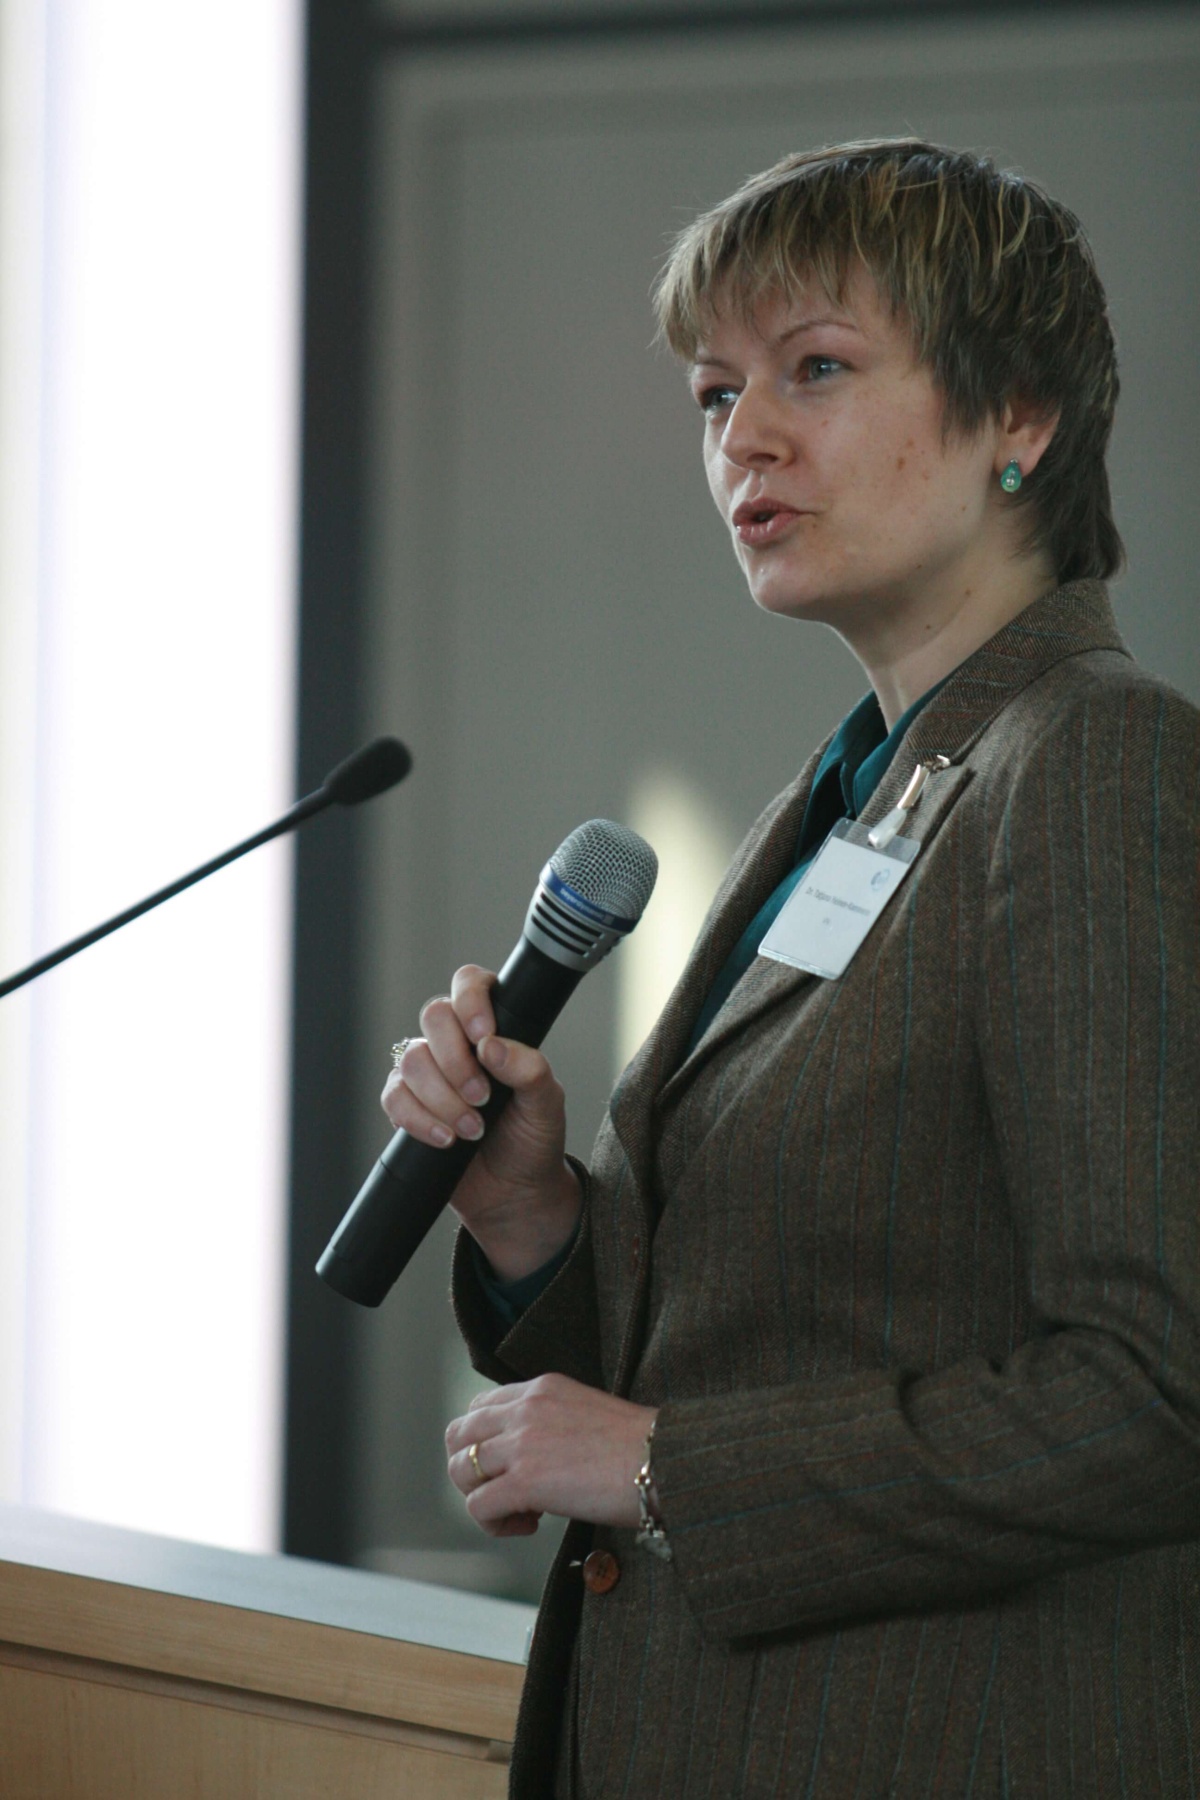 Dr. Tatjana Heinen Kammerer